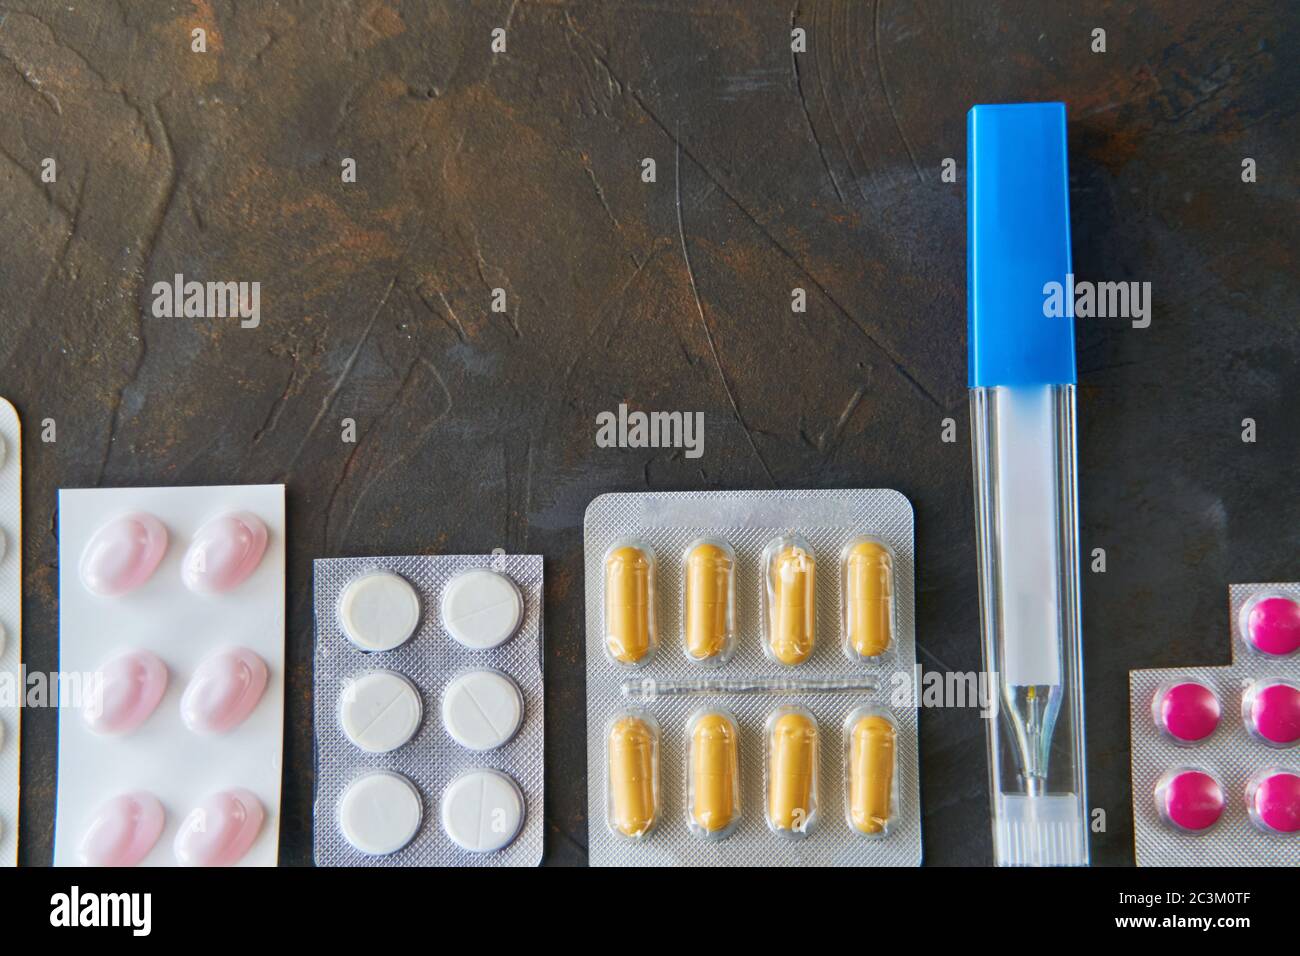 Pillole capsule medicina salute su sfondo scuro vista dall'alto, concetto di farmacia medica. Pillole diverse su sfondo scuro con spazio di copia. Foto Stock